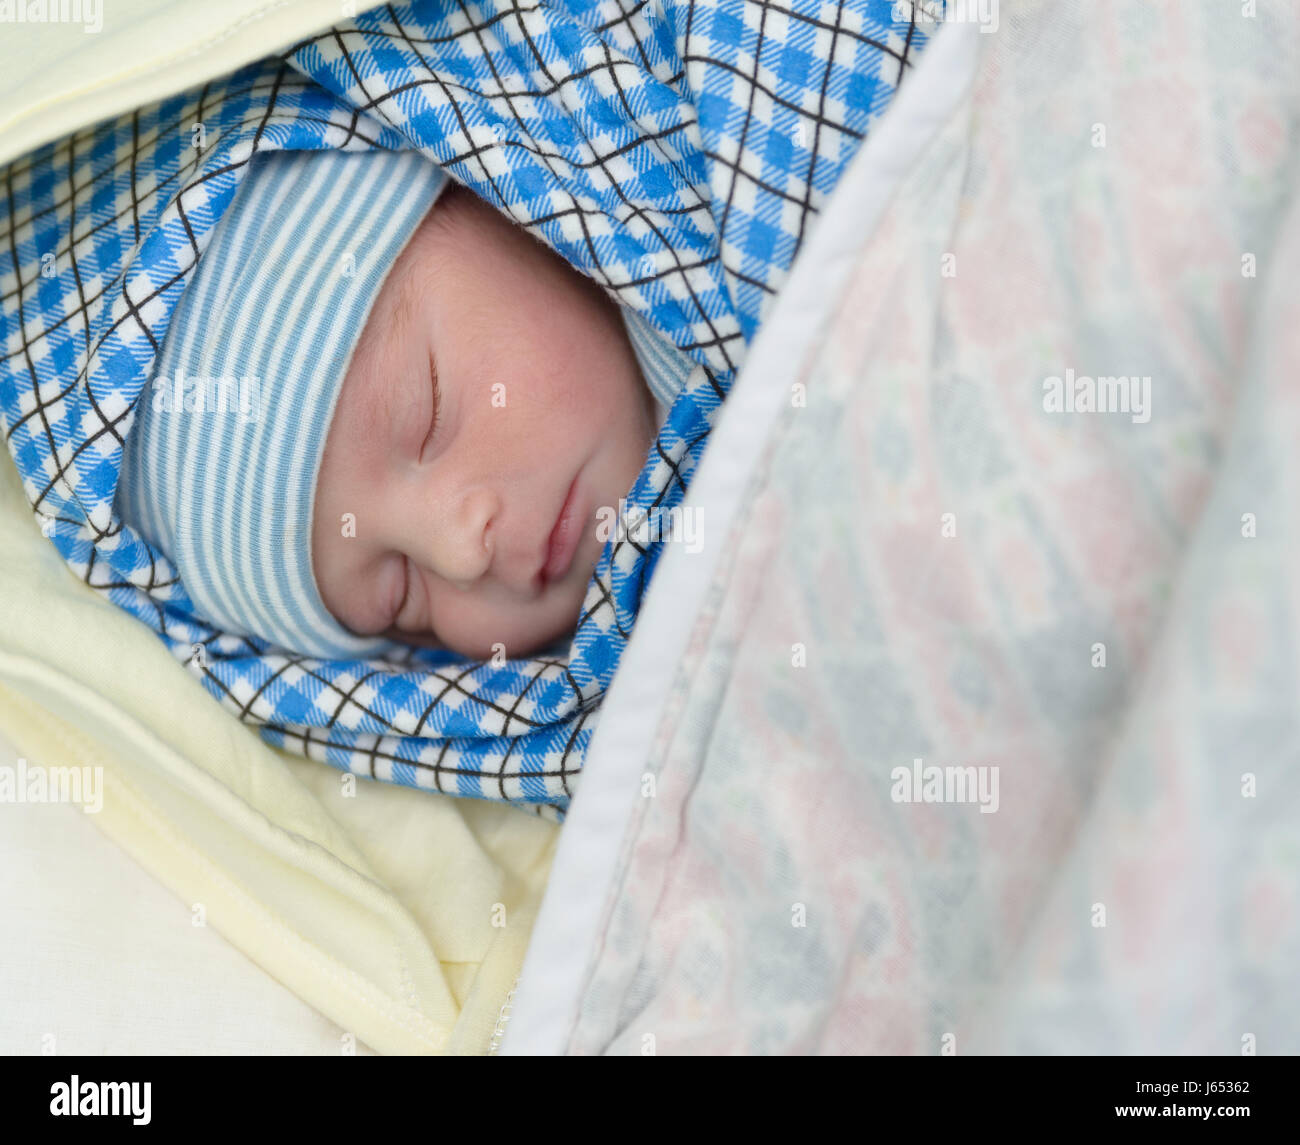 Raza mixta sur asiáticos y caucásicos bebé recién nacido duerme Foto de stock